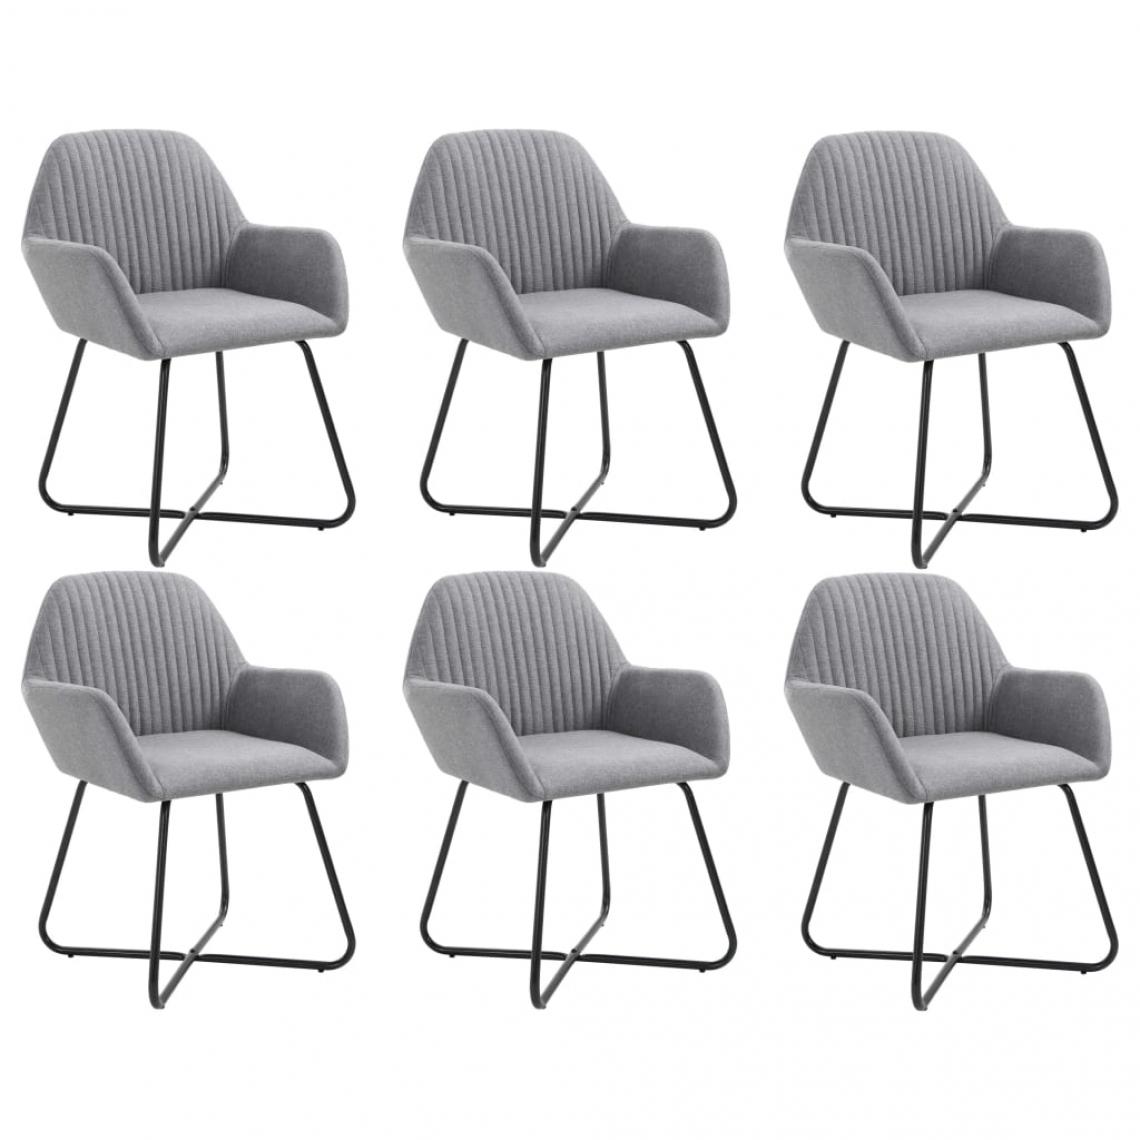 Decoshop26 - Lot de 6 chaises de salle à manger cuisine design moderne tissu gris clair CDS022419 - Chaises